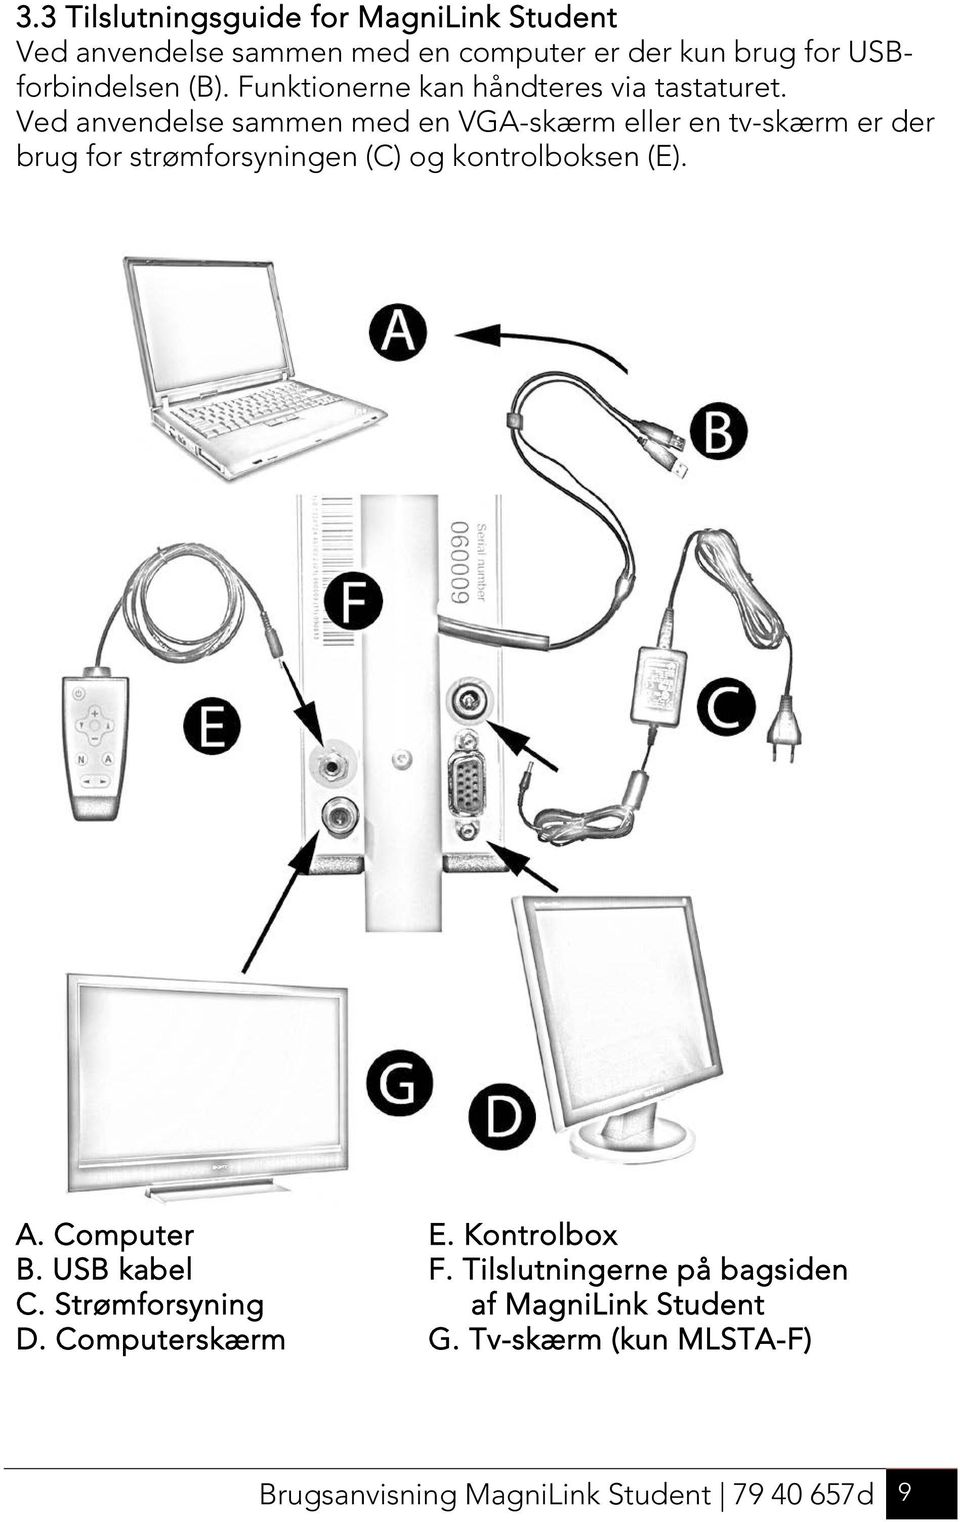 Ved anvendelse sammen med en VGA-skærm eller en tv-skærm er der brug for strømforsyningen (C) og kontrolboksen (E). A.